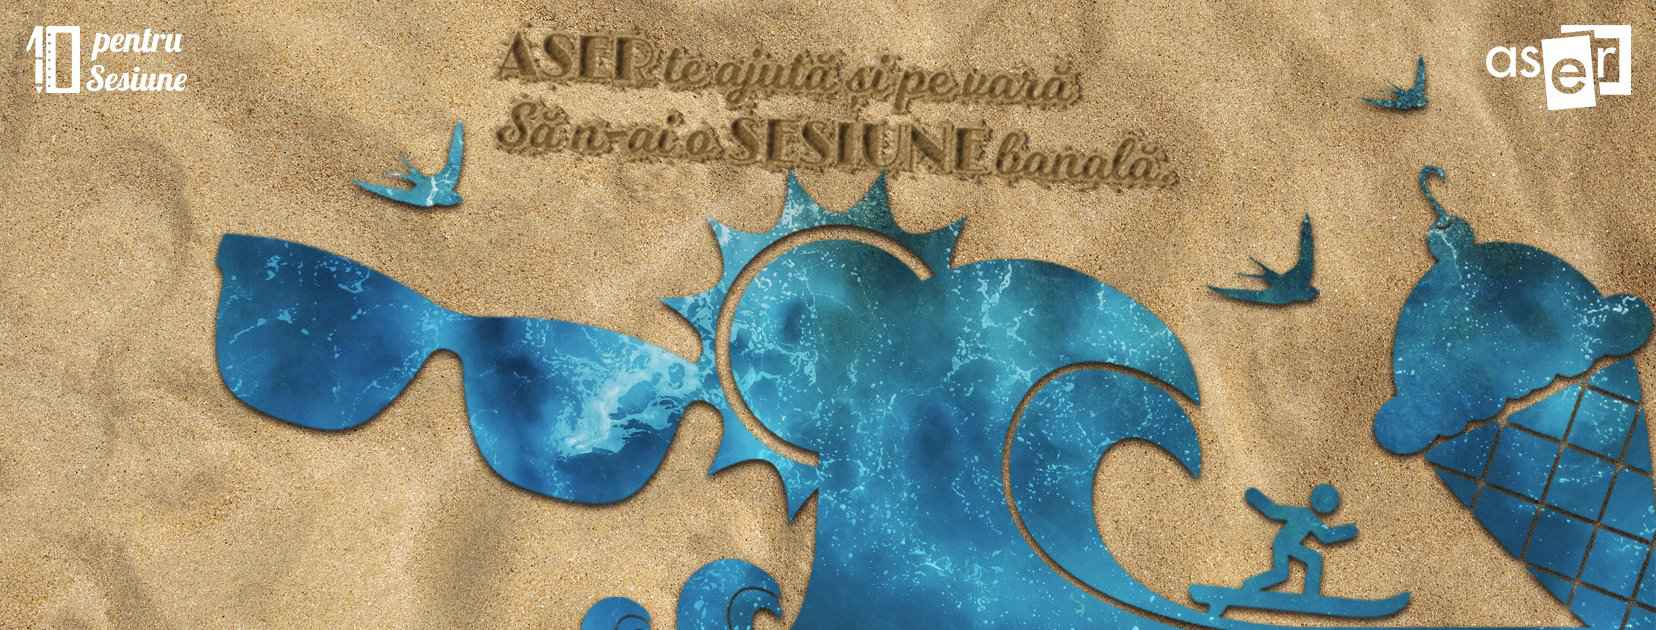 Noua campanie desfășurată de ASER România - „10 pentru Sesiune”